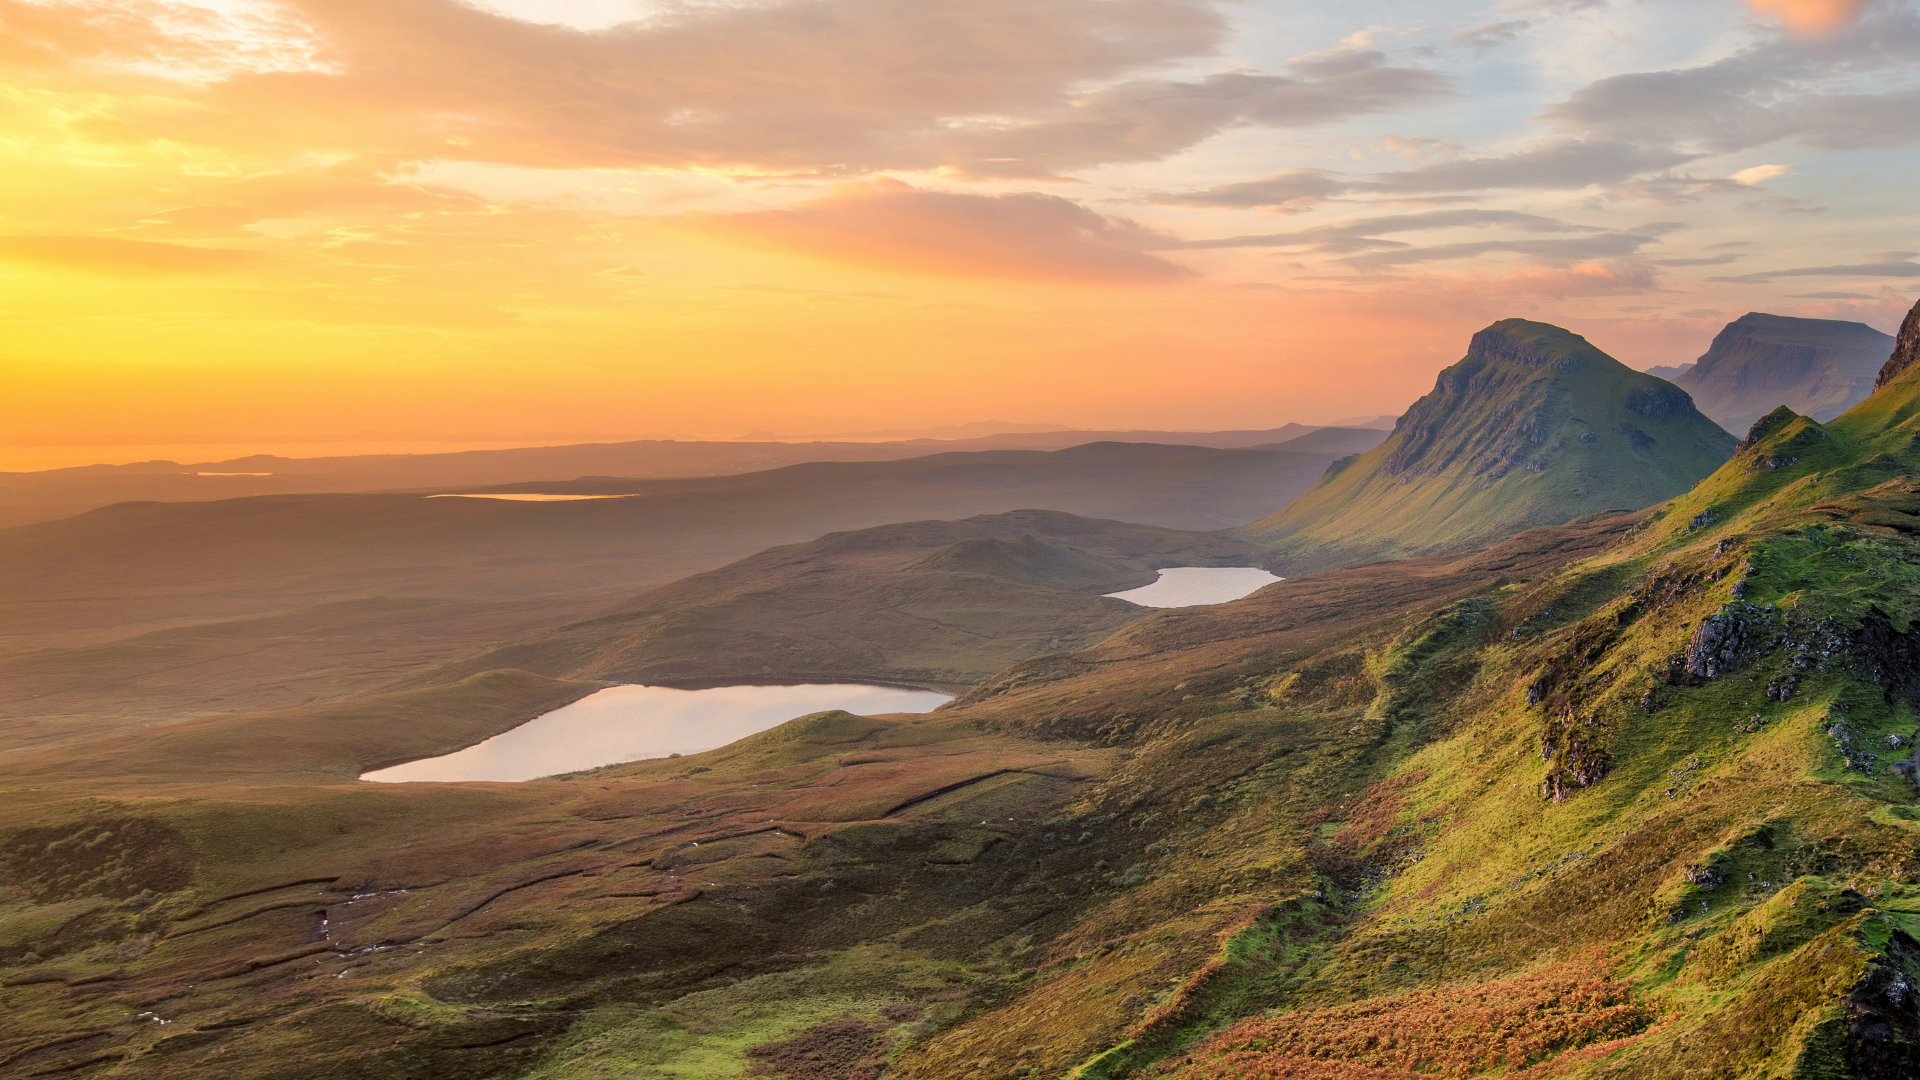 A highland landscape at sunset